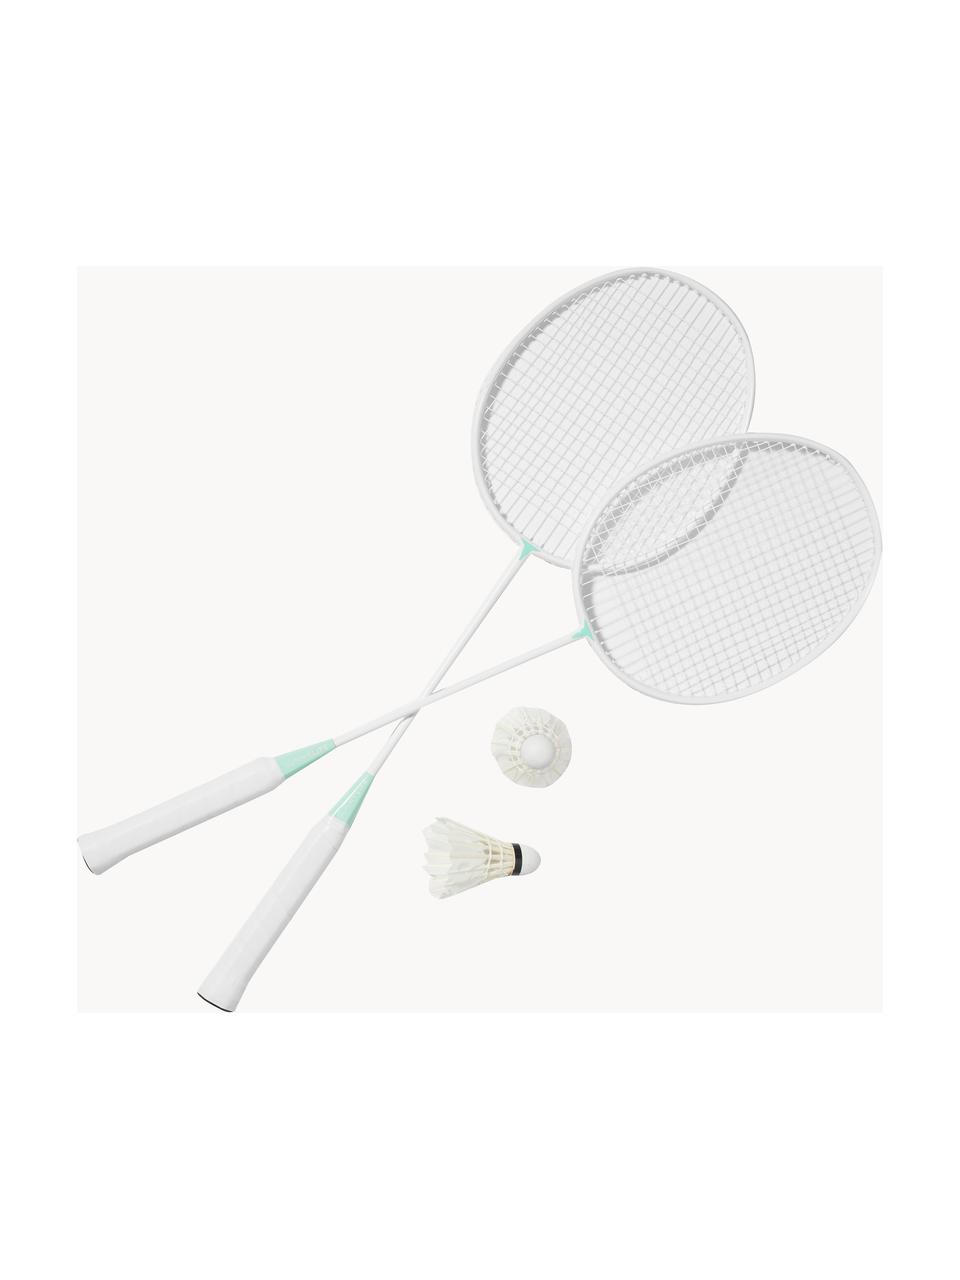 Juego de badminton Rio Sun, 5 pzas., Plástico, Blanco, multicolor, An 20 x Al 67 cm